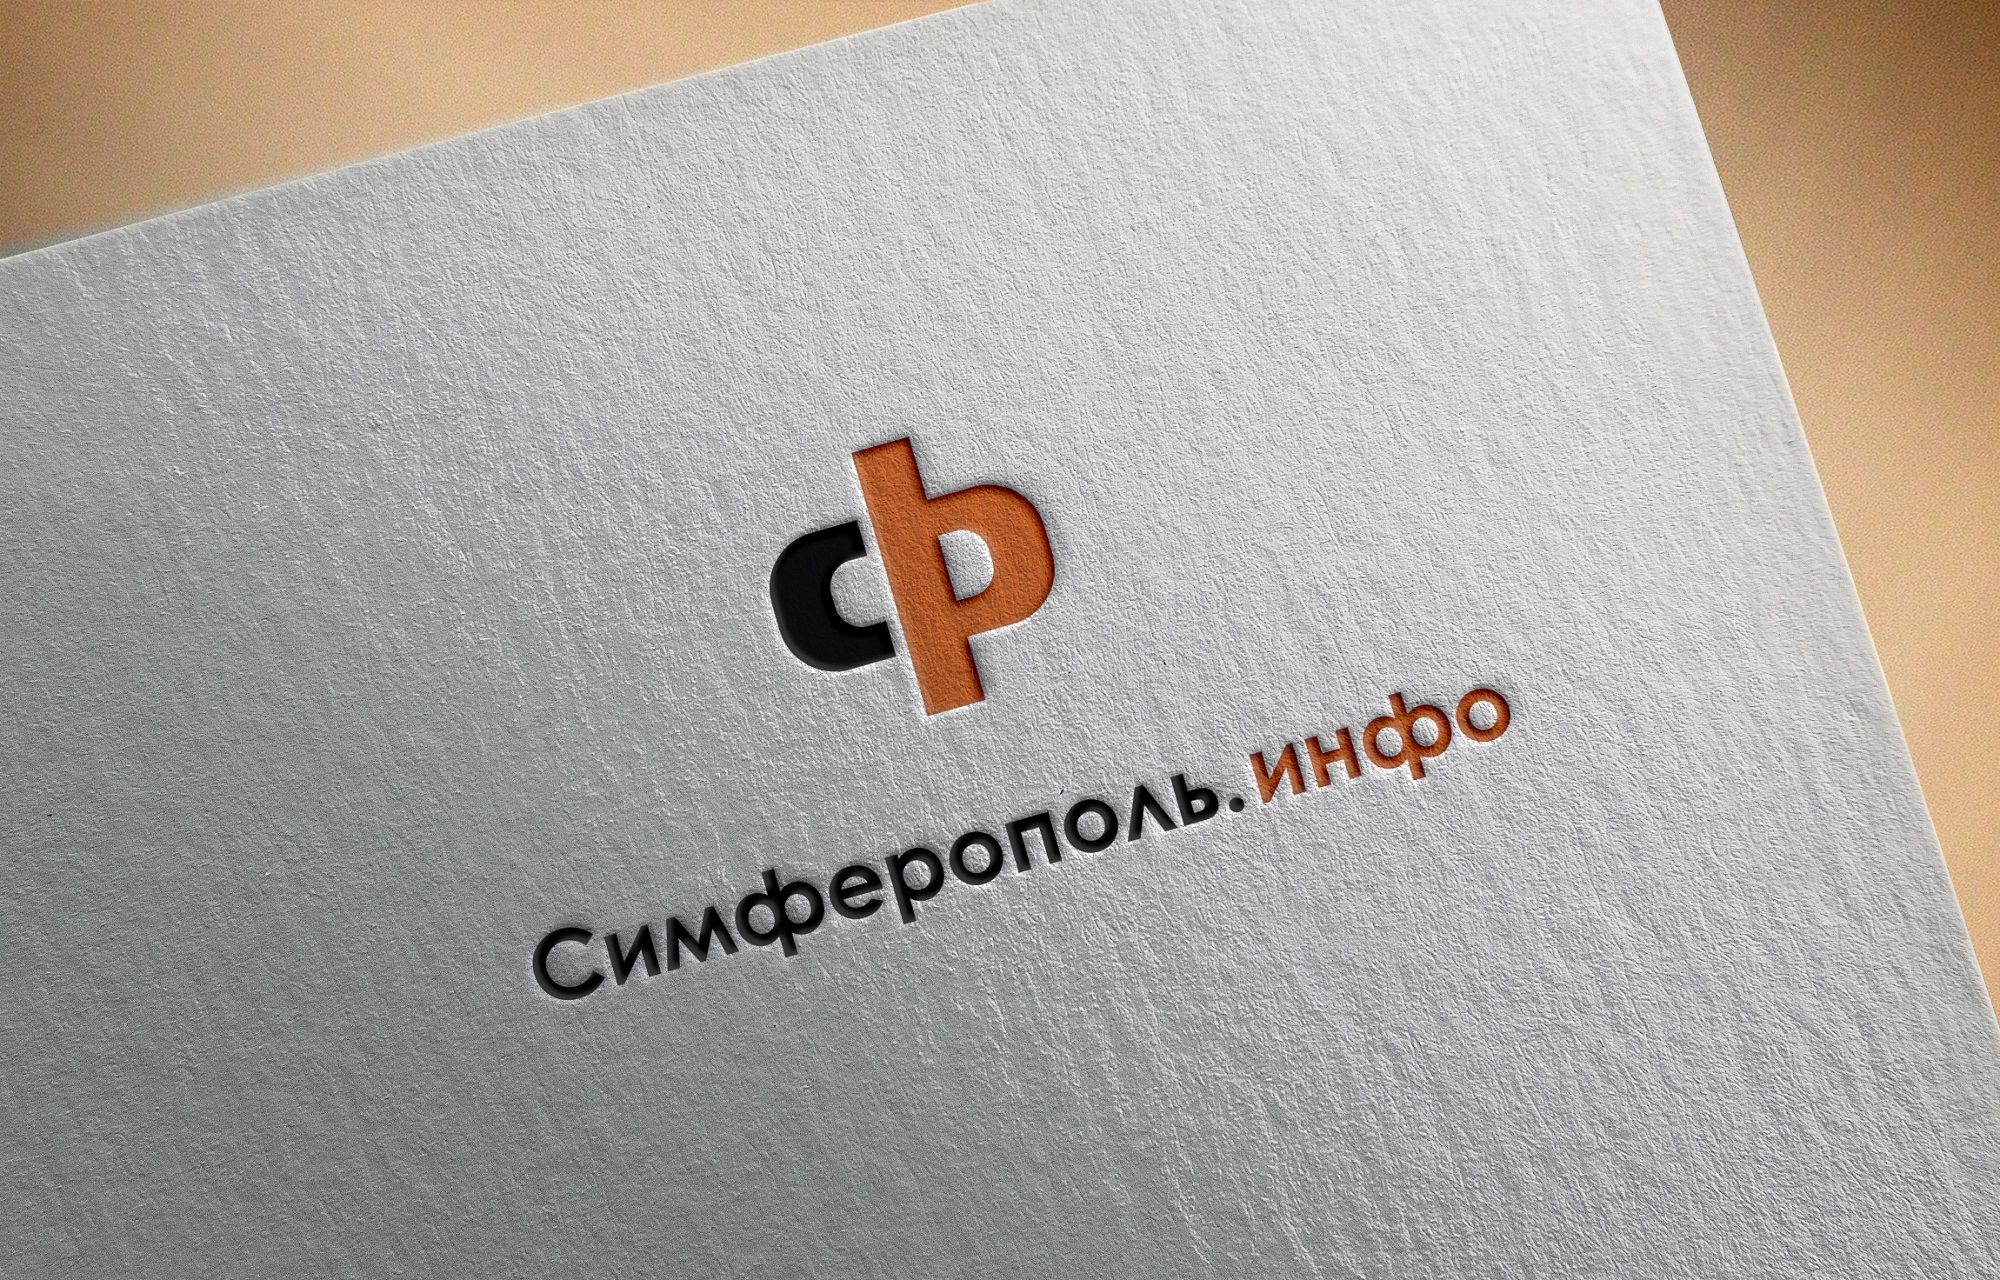 Разработка логотипа для сайта города Симферополь - дизайнер Rusj